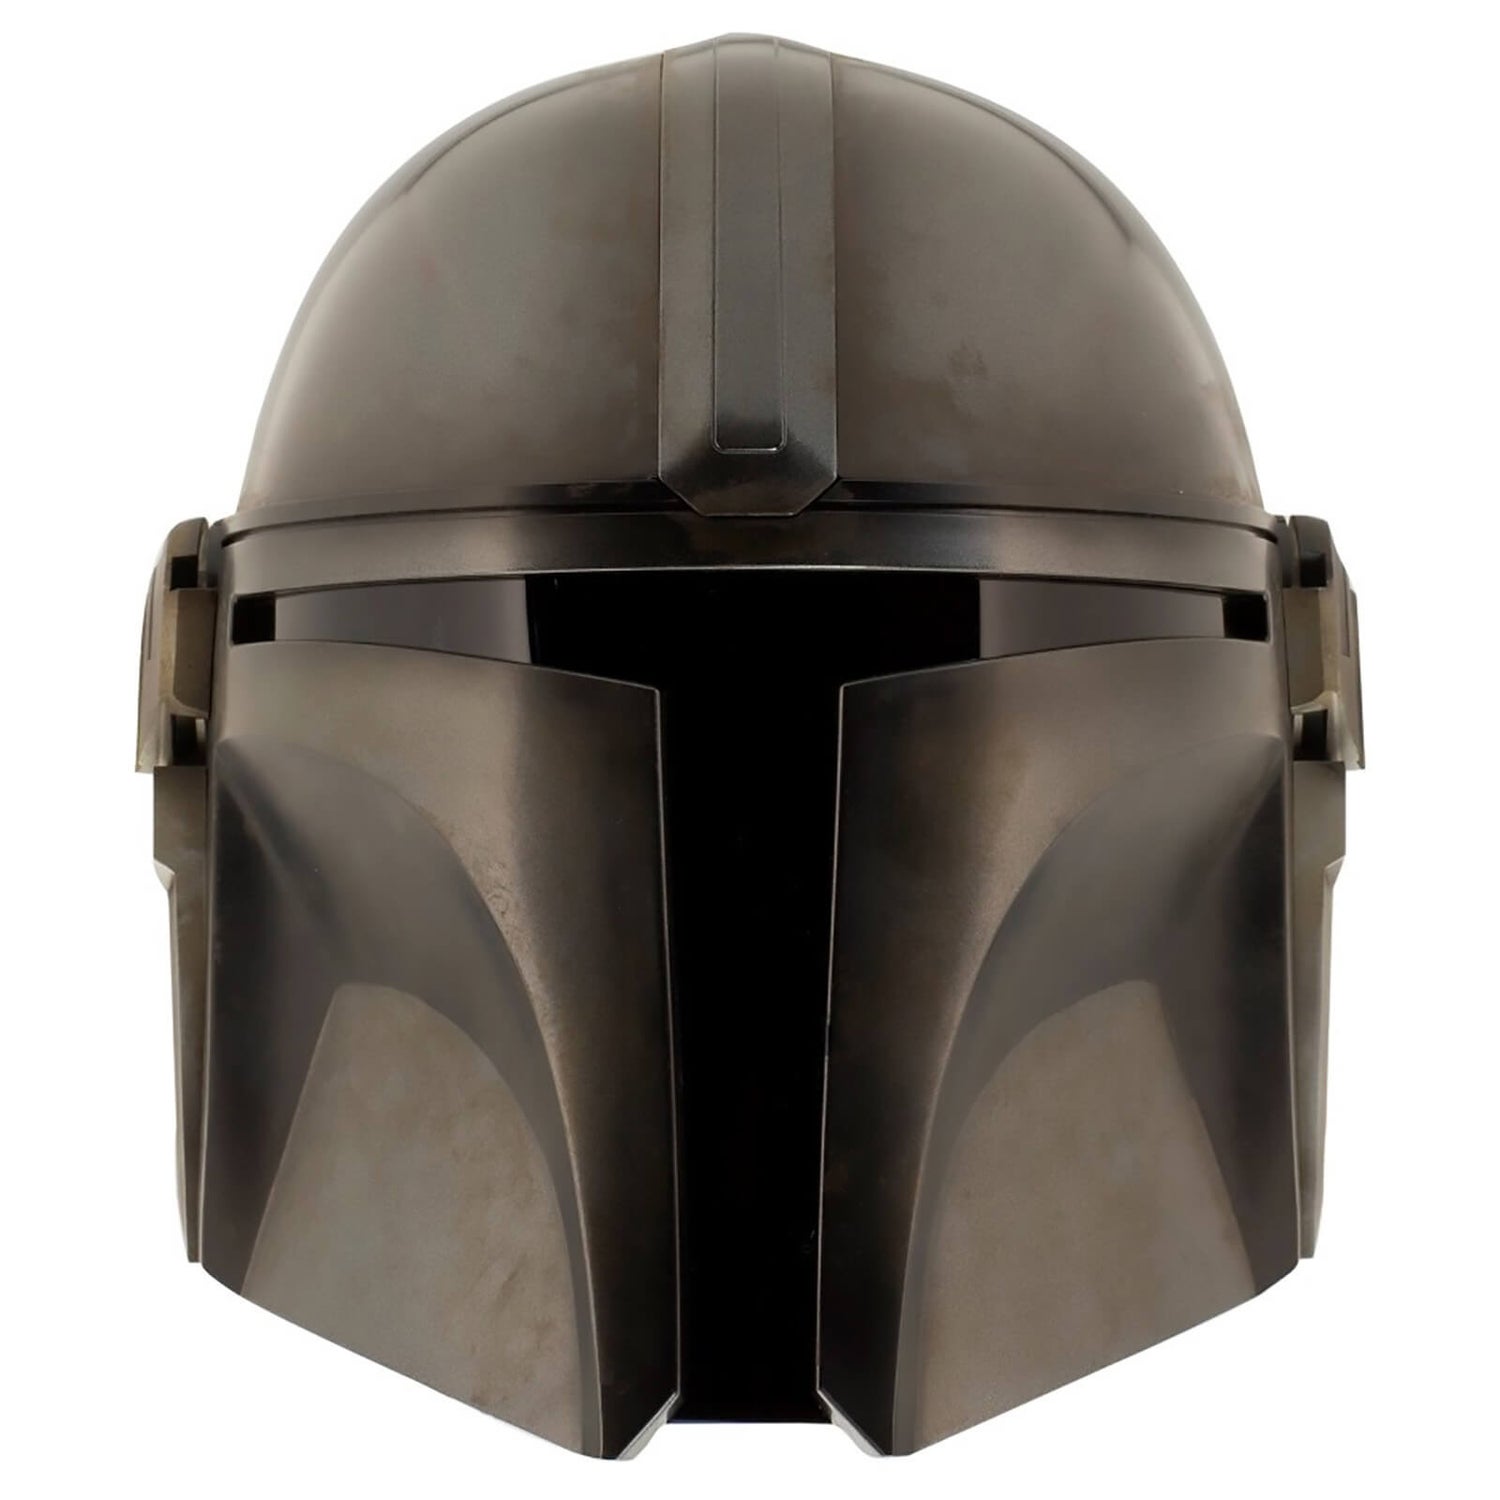 EFX Mandalorian 1:1 Scale Precision Crafted Replica Helmet